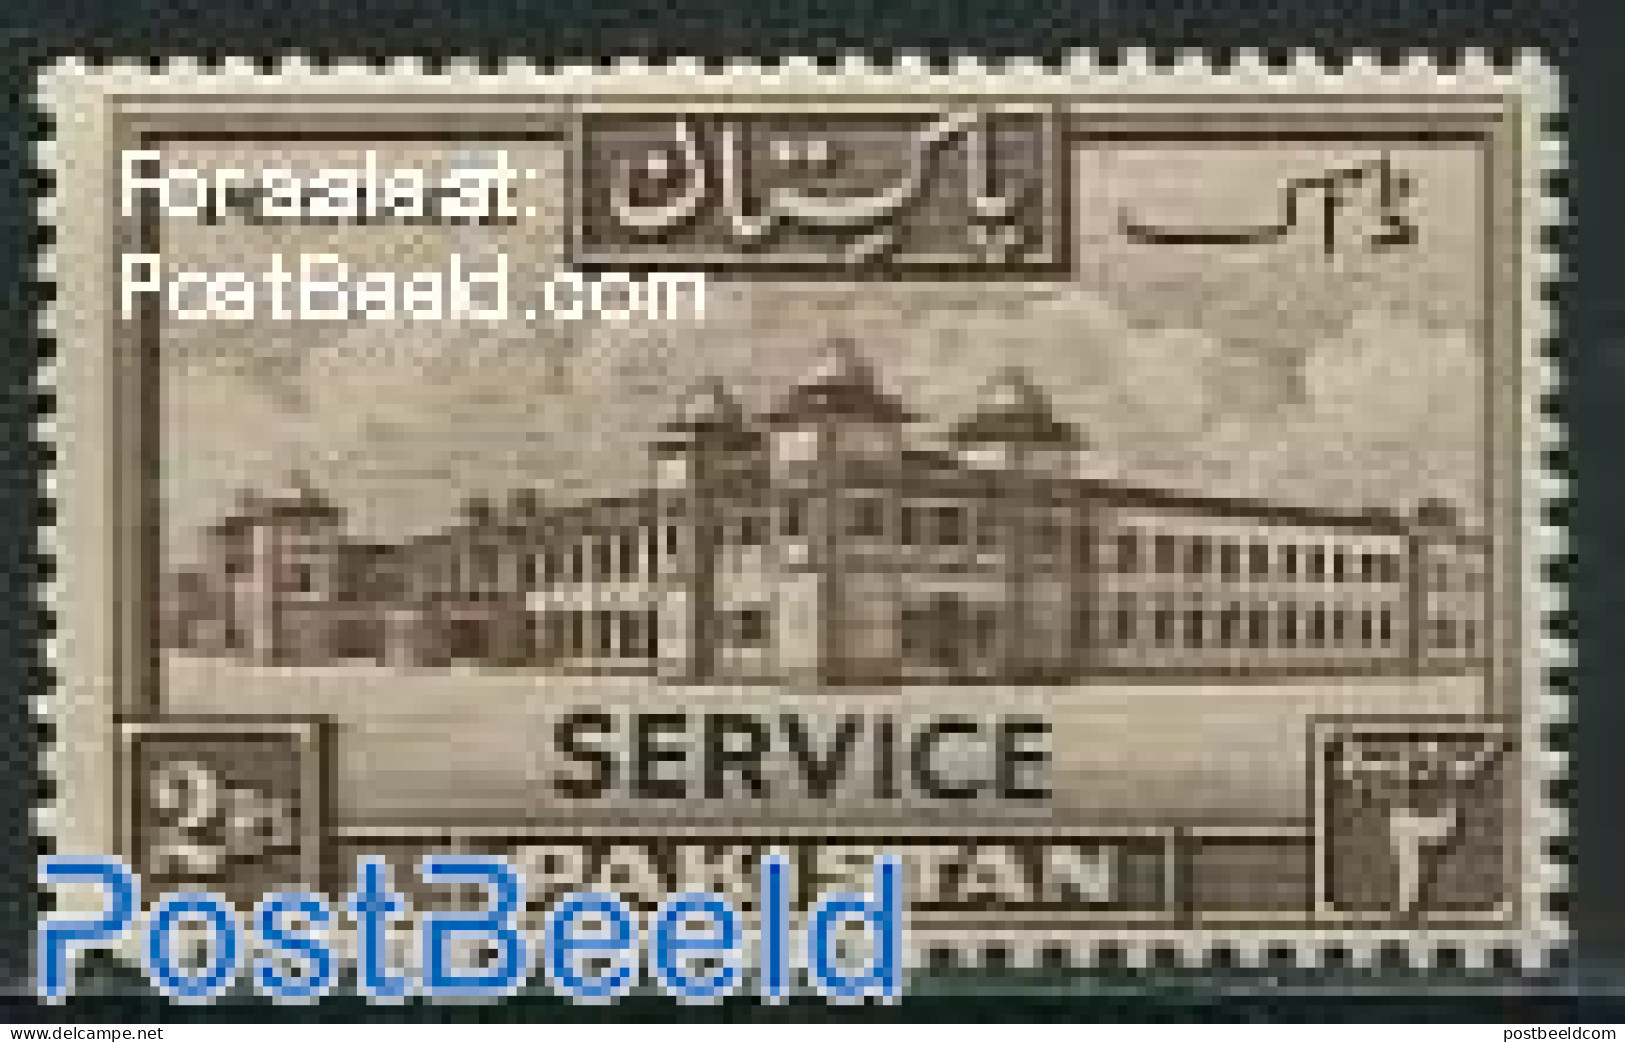 Pakistan 1948 2R, On Service, Stamp Out Of Set, Mint NH - Pakistán